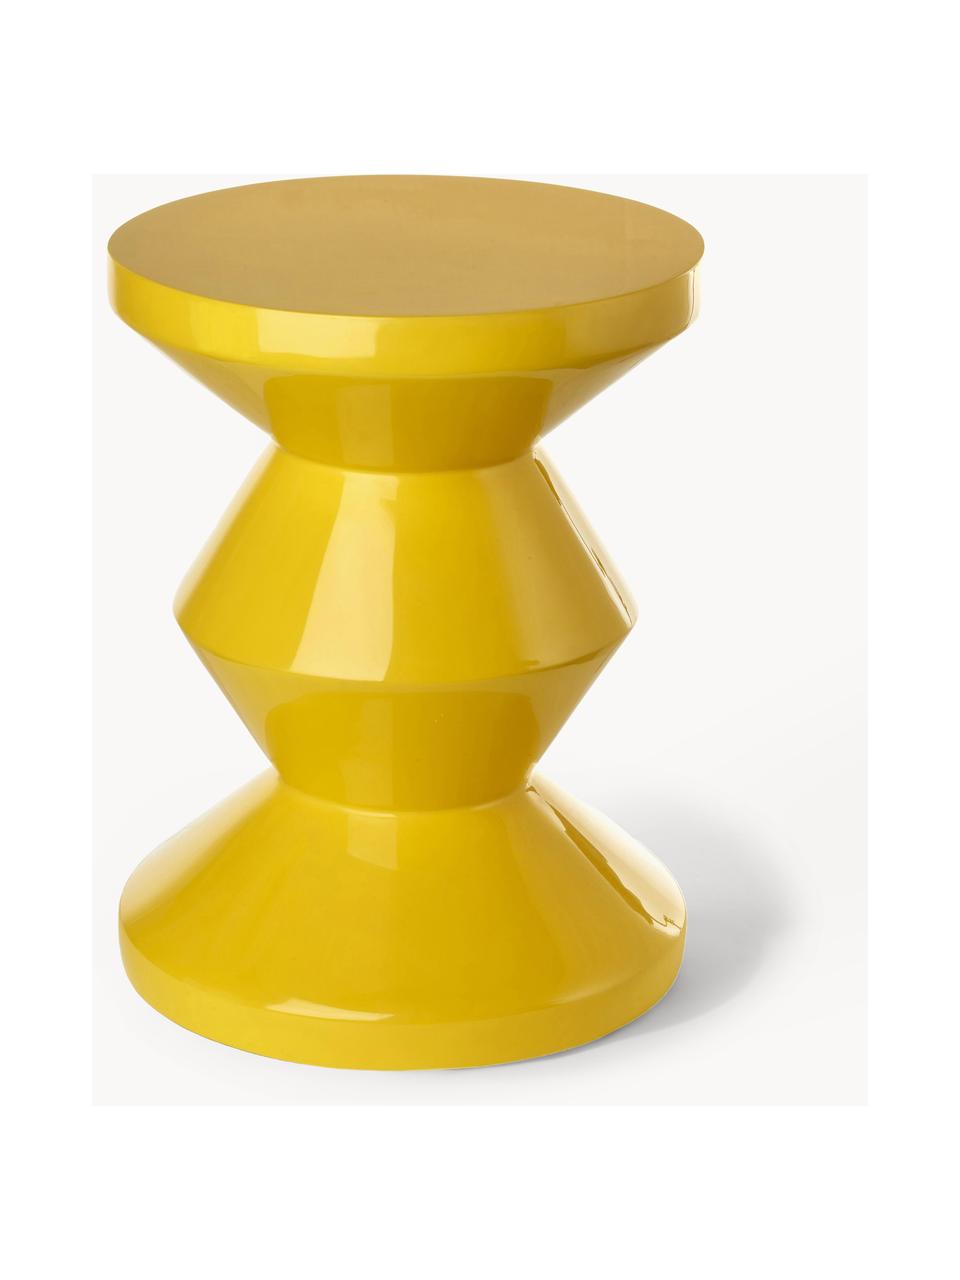 Stolik pomocniczy Zig Zag, Tworzywo sztuczne lakierowane, Słoneczny żółty, Ø 36 x W 46 cm